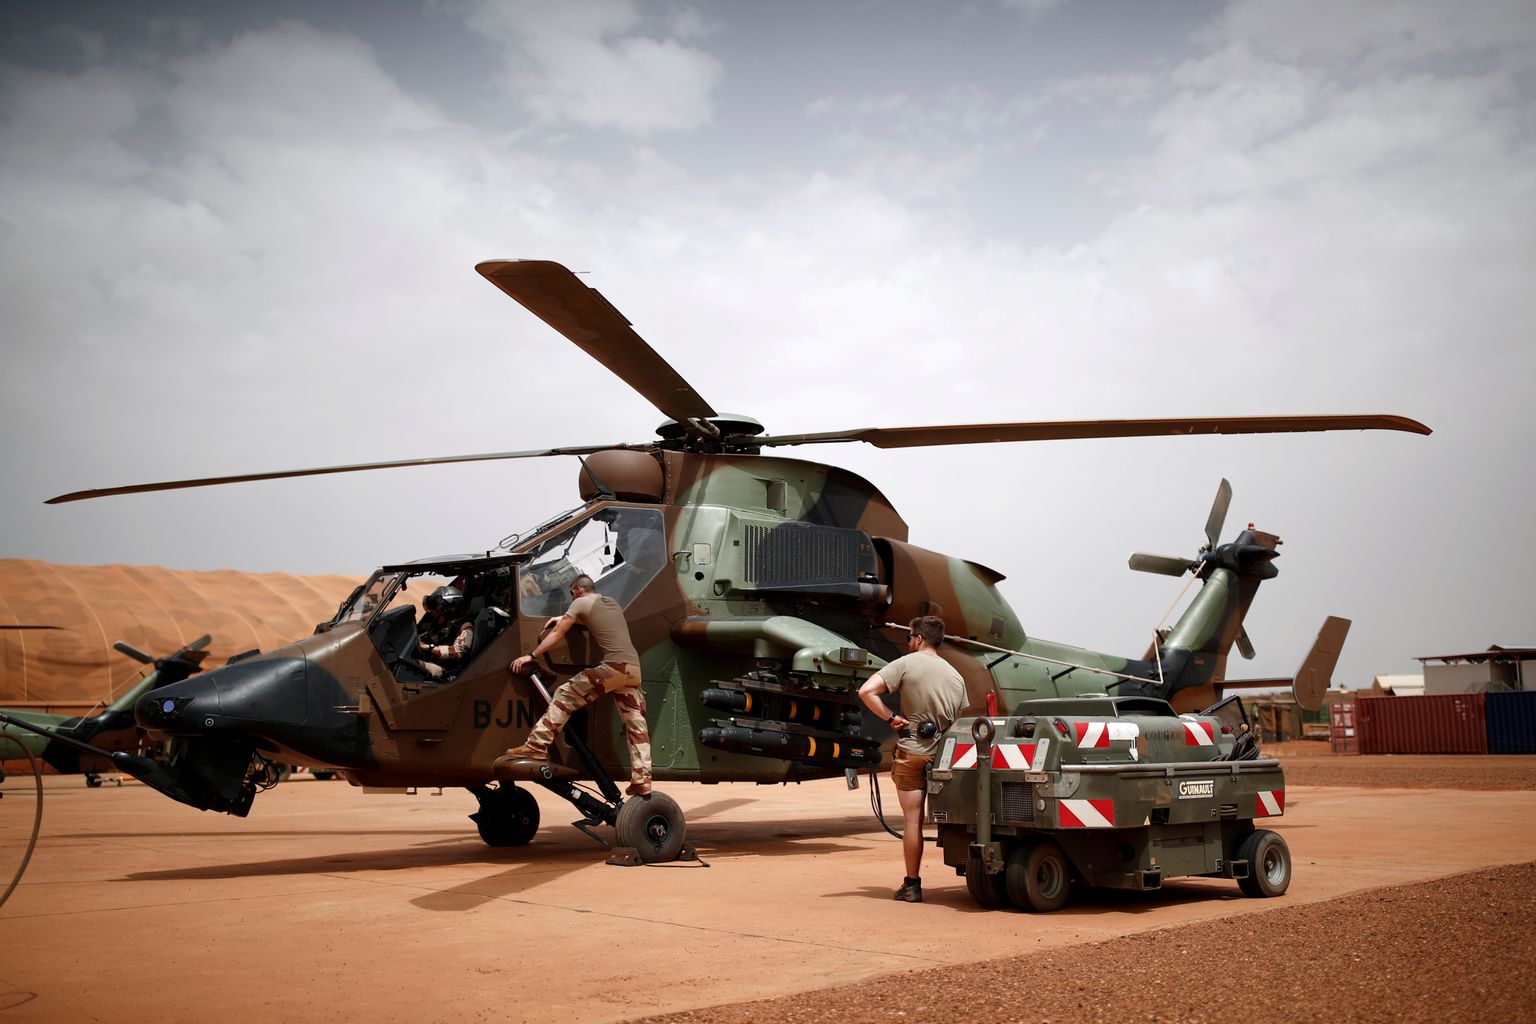 Prantsuse sõjaväelased 1. augustil Malis Gaos asuvas baasis ründehelikopterit Tiger teenindamas.